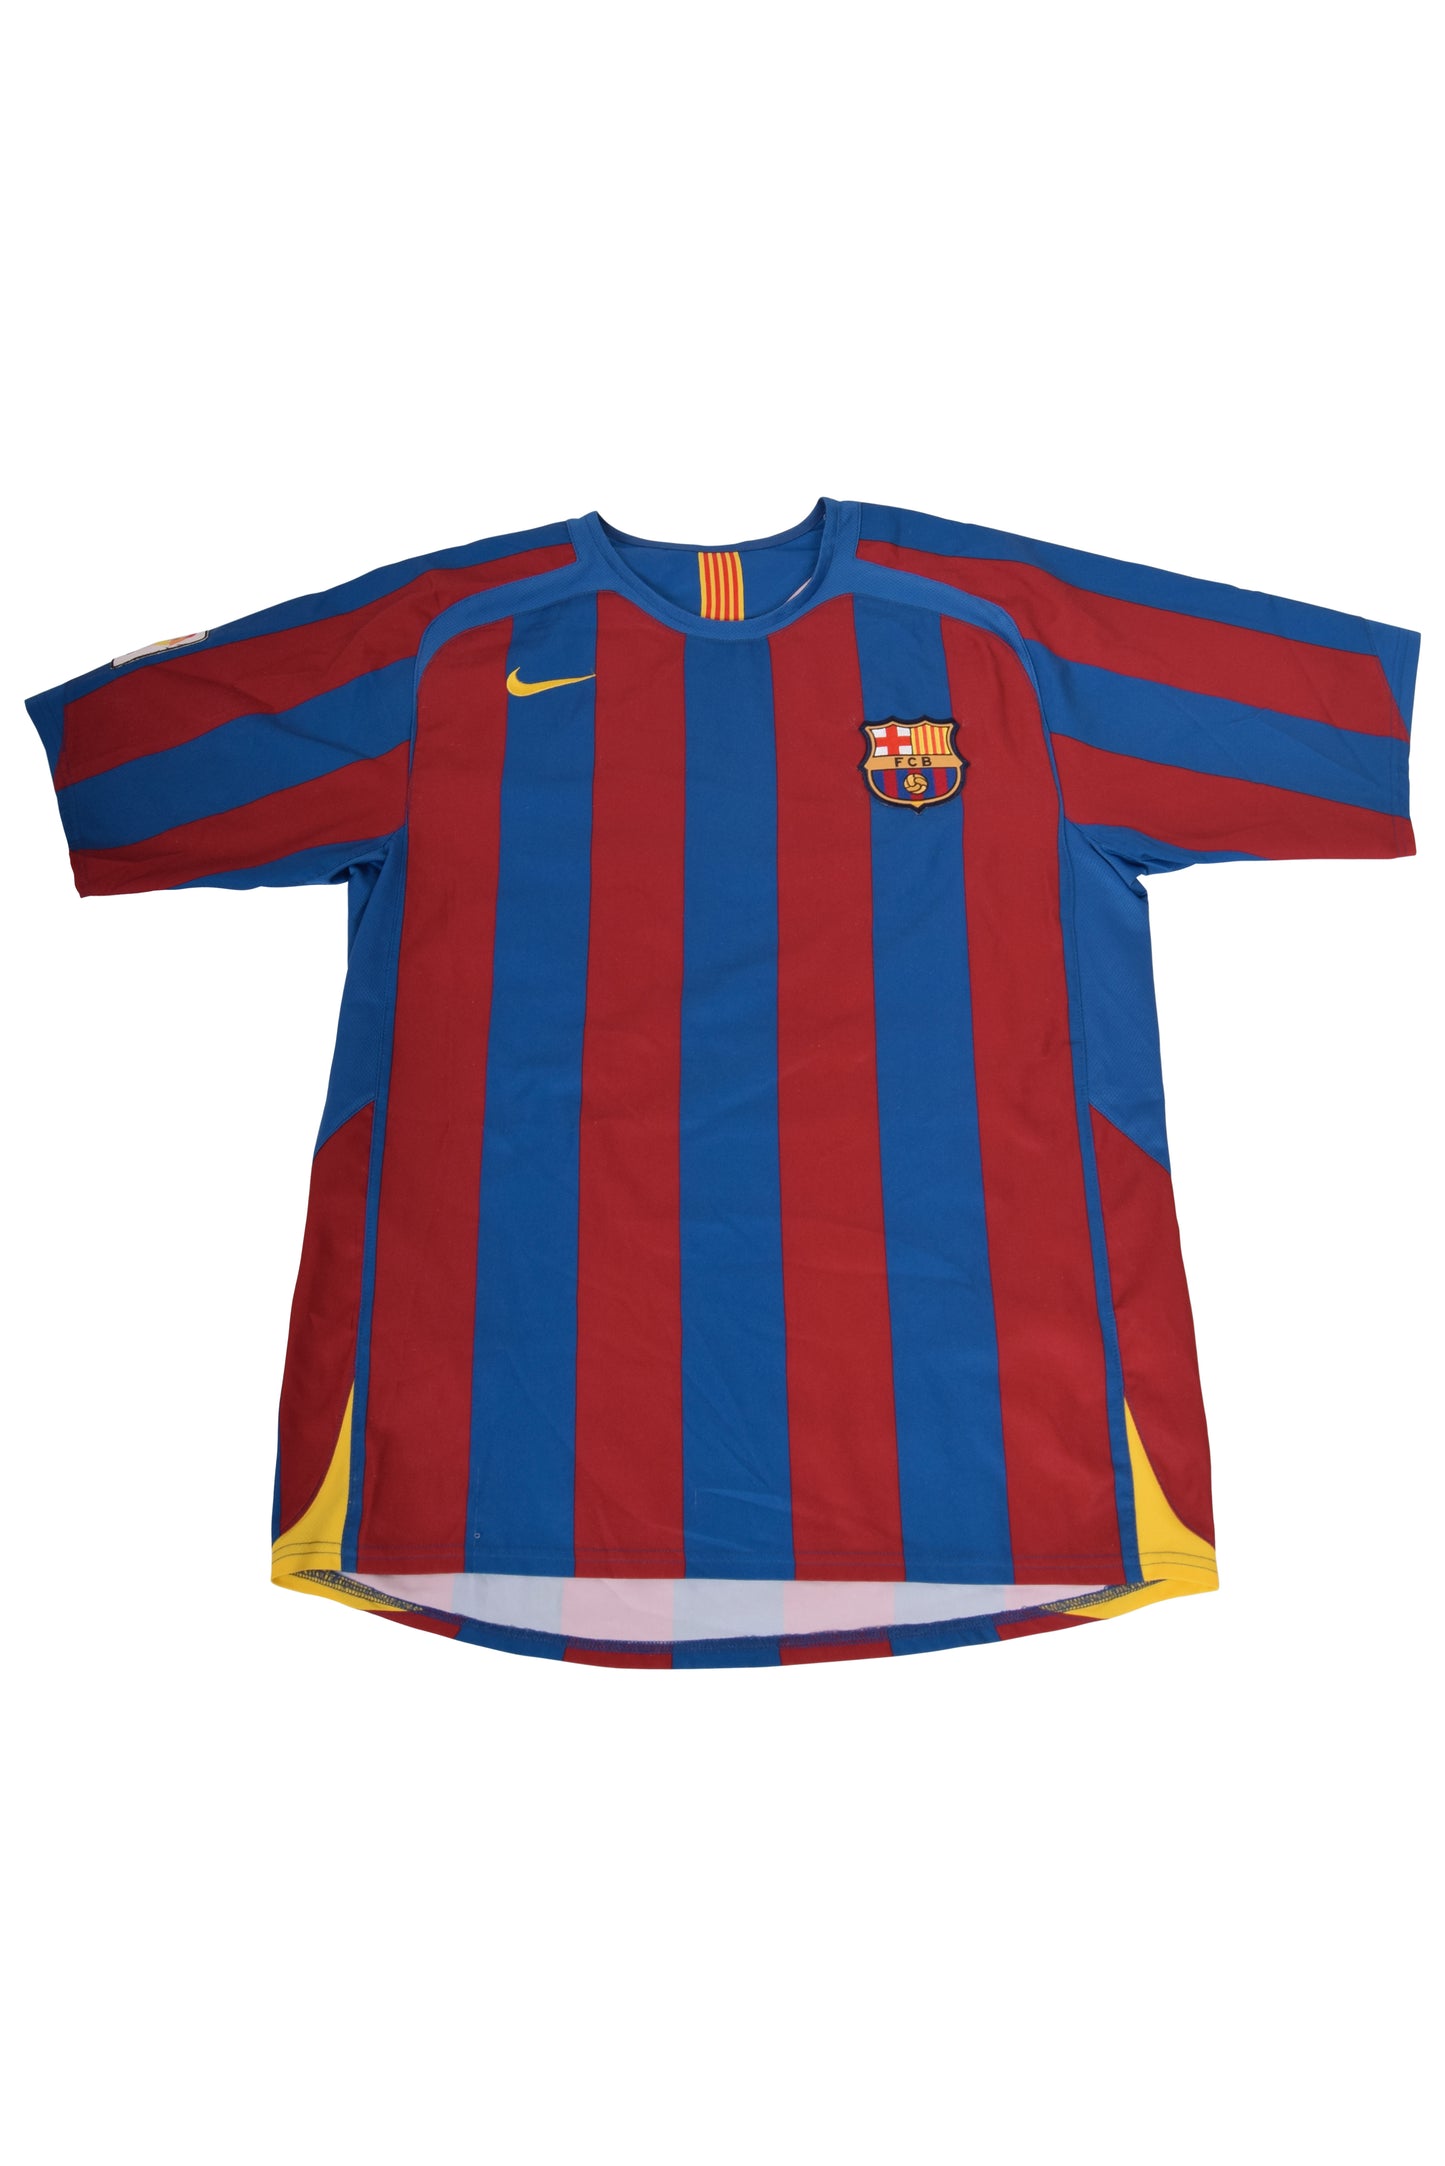 Ronaldinho Barcelona Nike 2005 - 2006 Home Football Shirt Size M